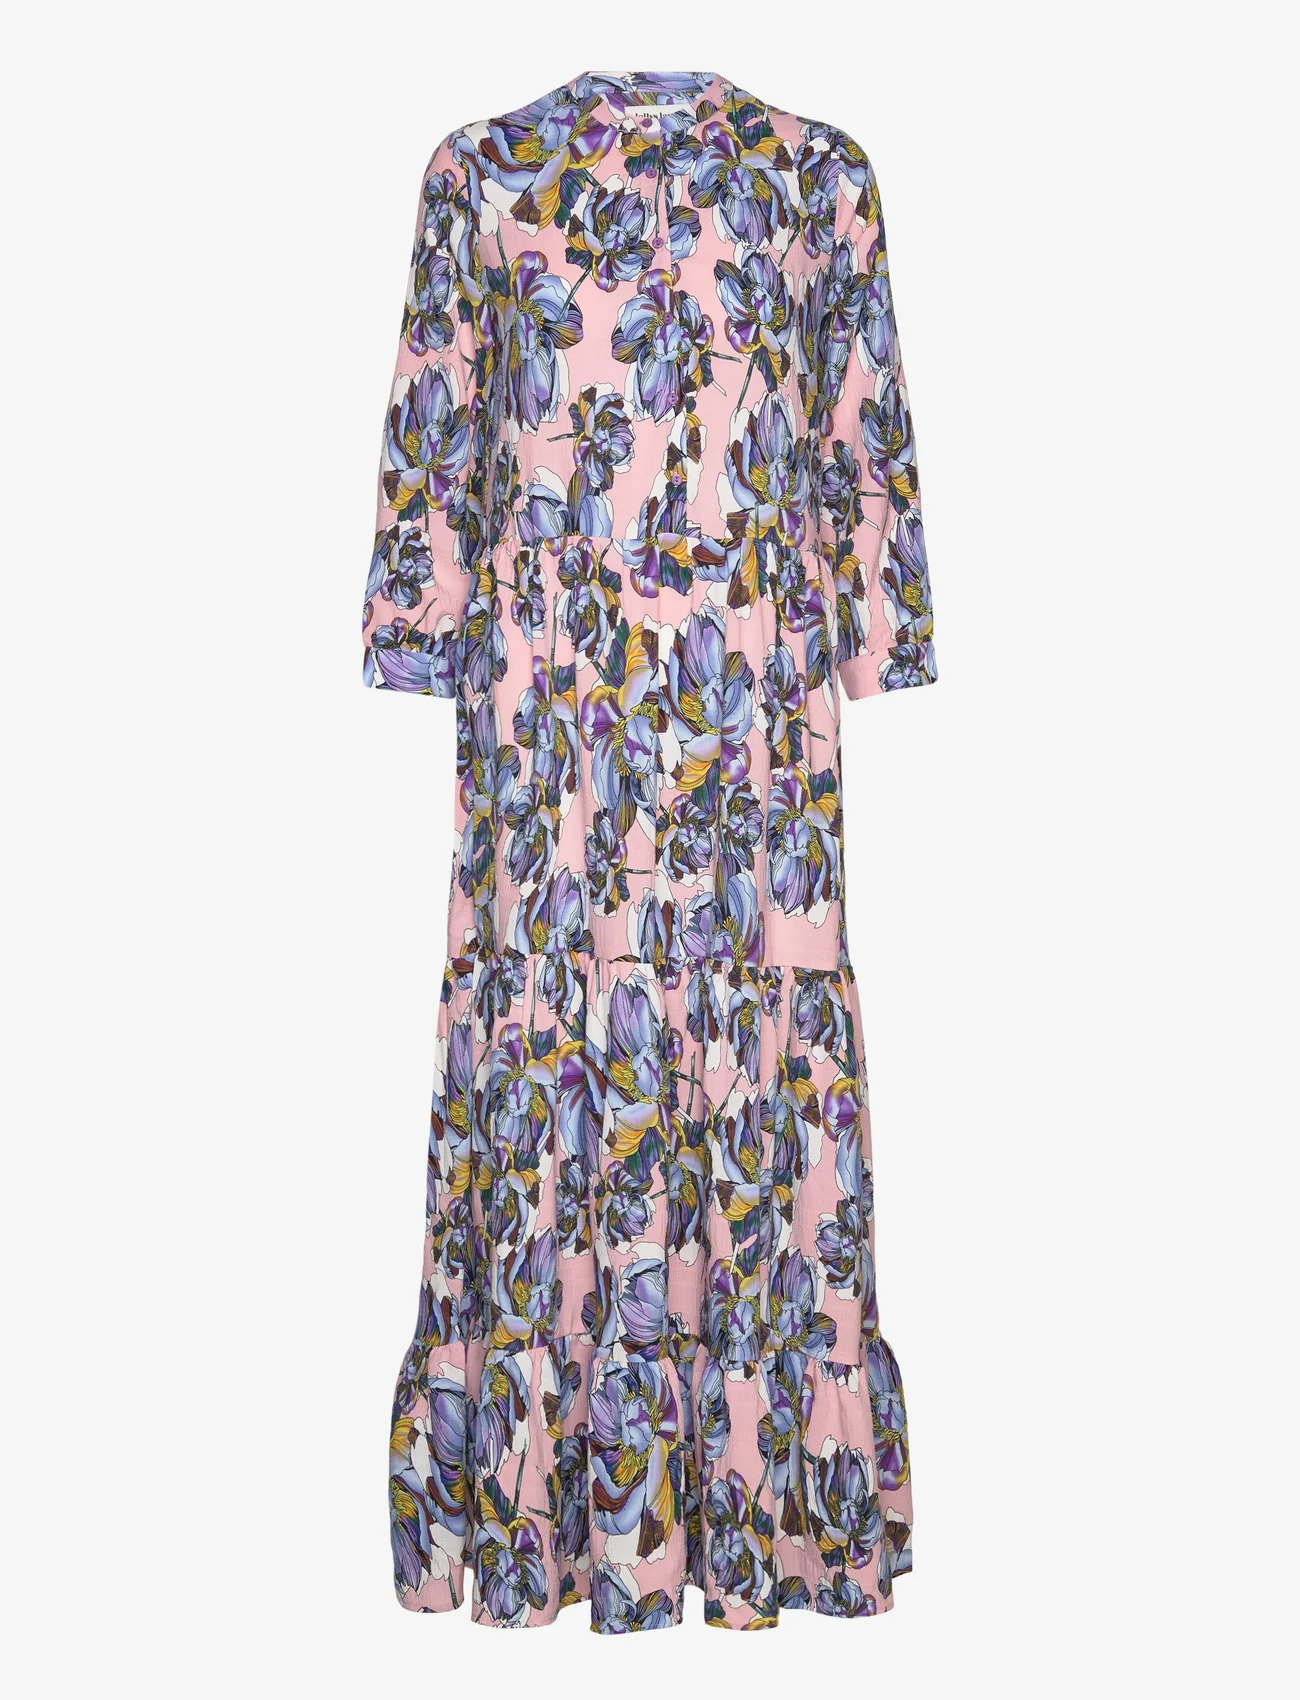 Lollys Laundry - Nee Dress - sukienki letnie - 74 flower print - 0